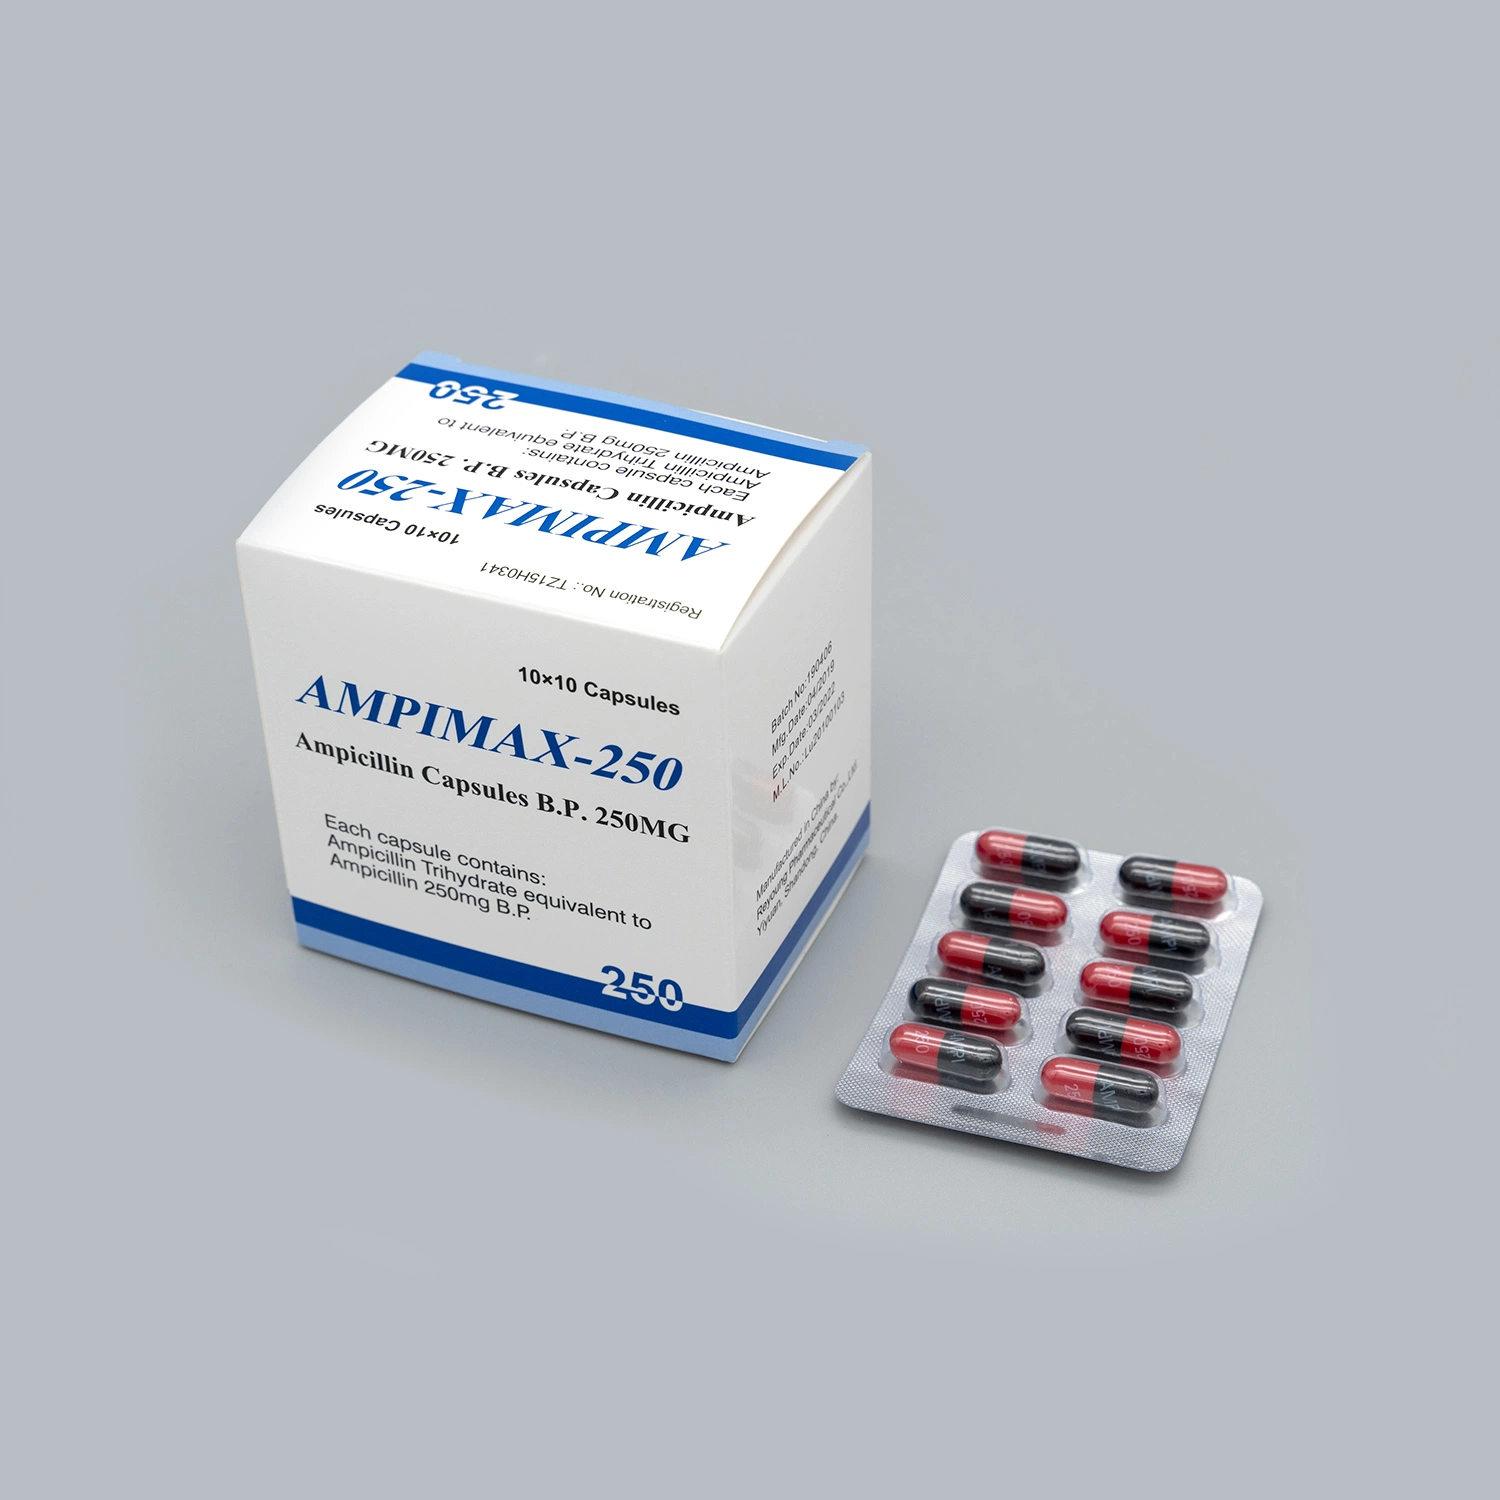 Les capsules d'antibiotique ampicilline/